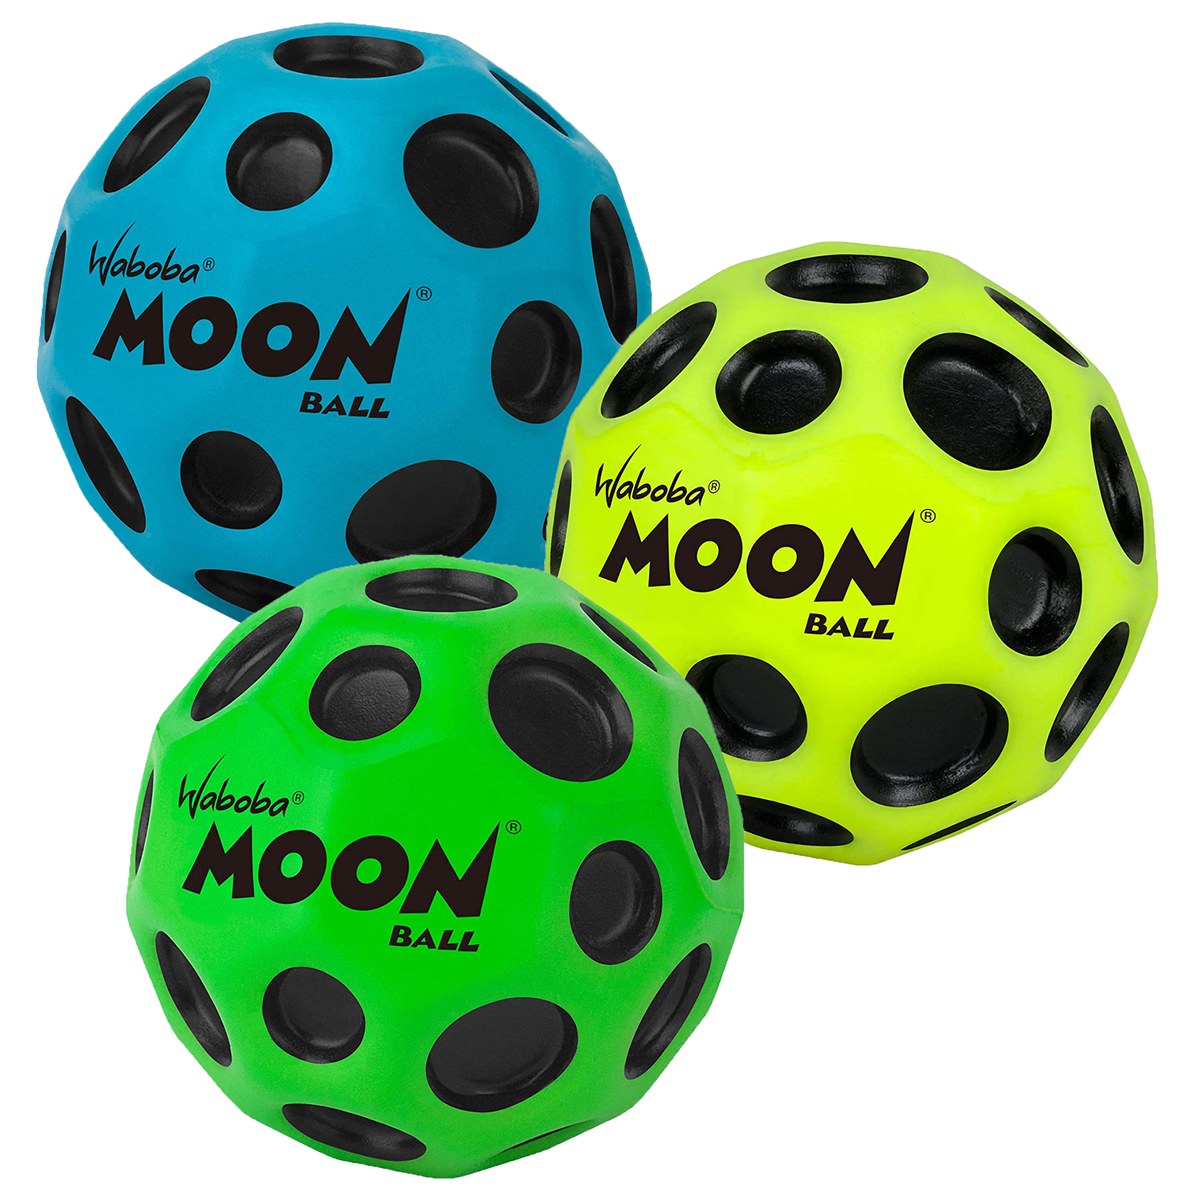 Waboba Moon Balls - Assorted Colors - Set of 3